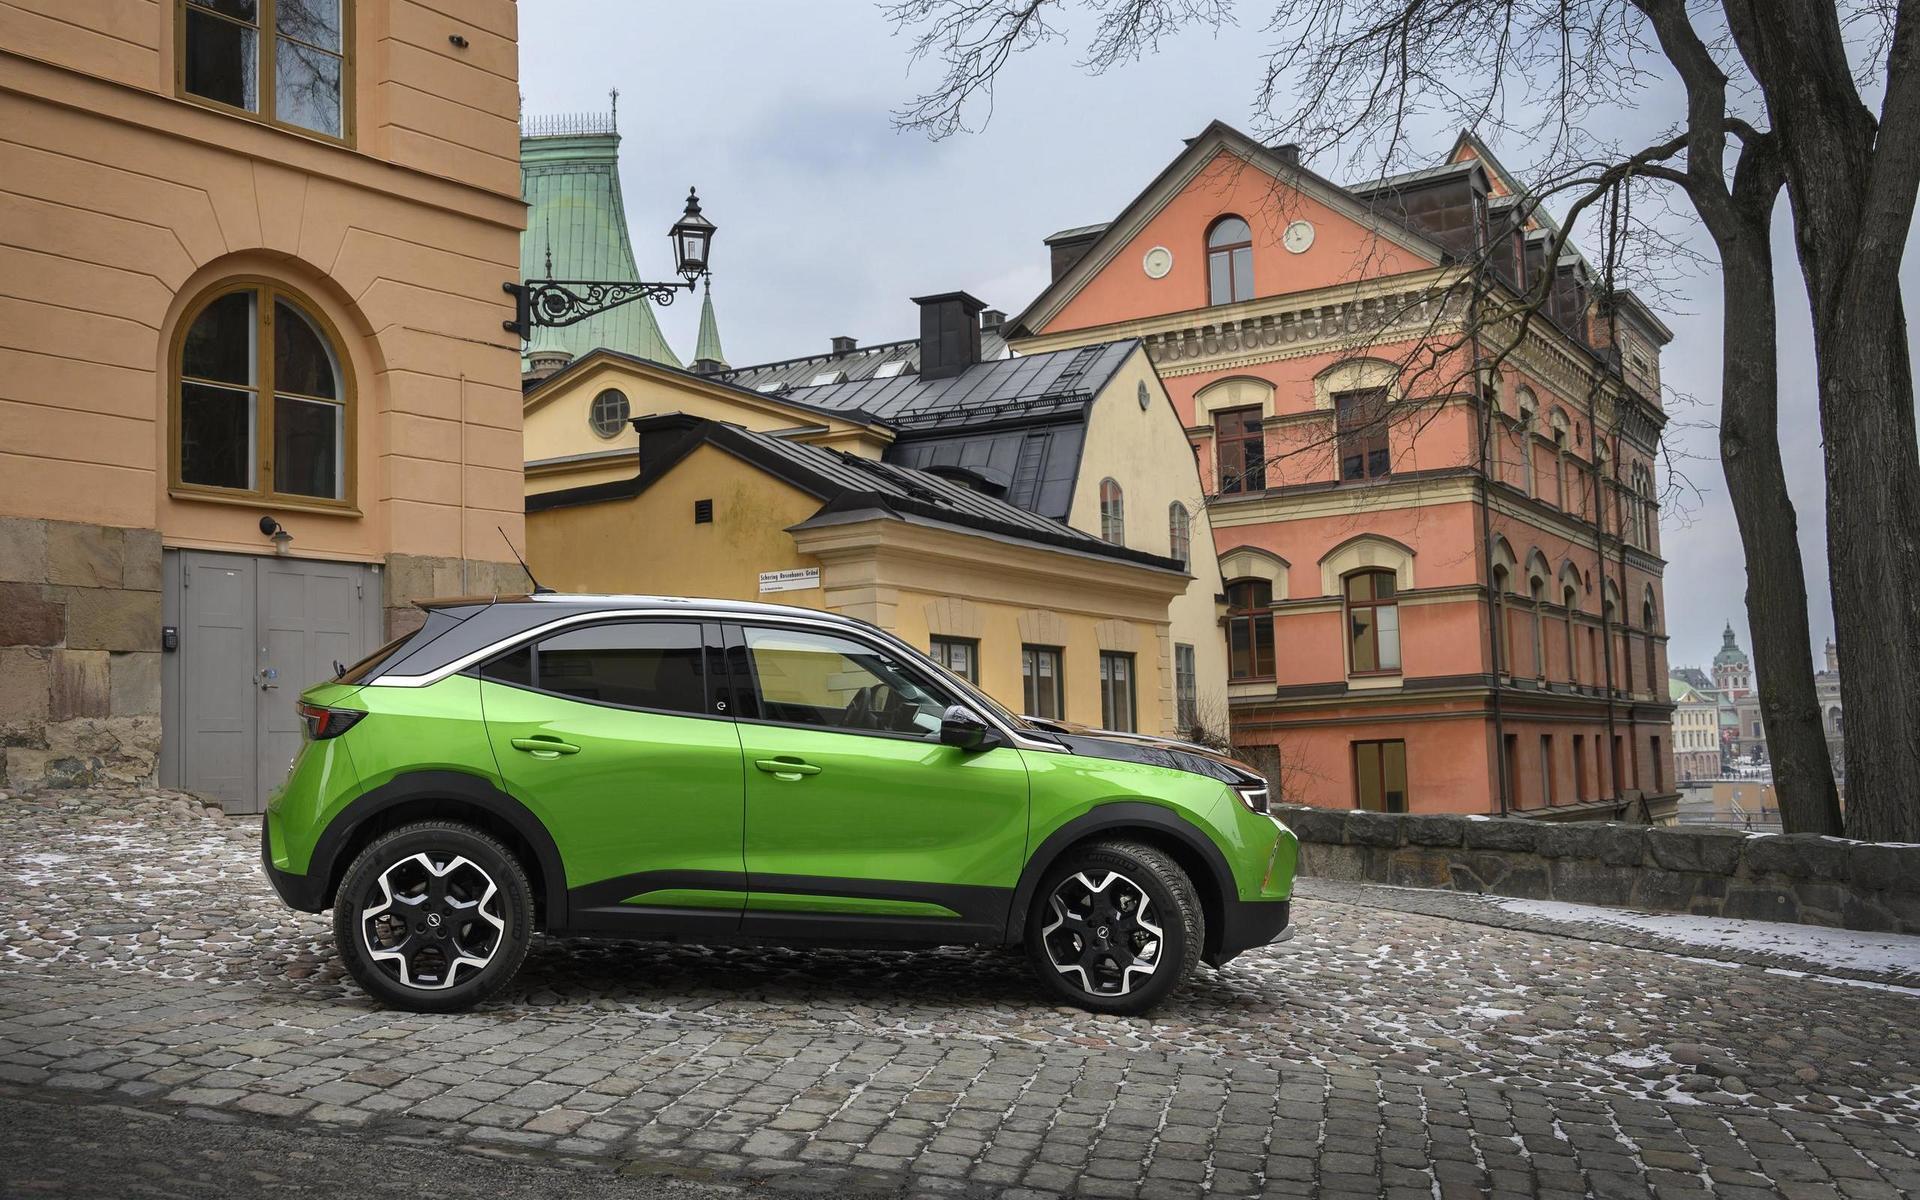 Den nya designen har inga likheter med den gamla. Opel hoppas kunna väcka nytt intresse för varumärket.